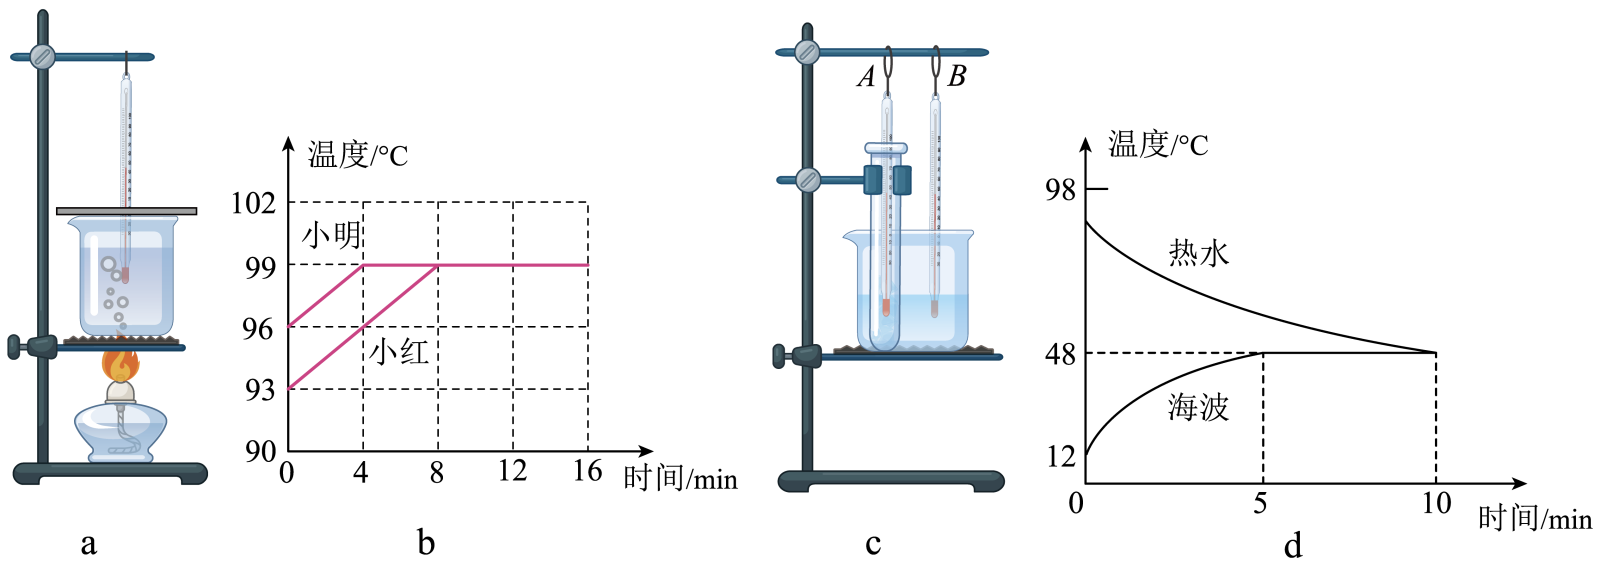 如下是探究水沸腾时温度变化的特点的实验